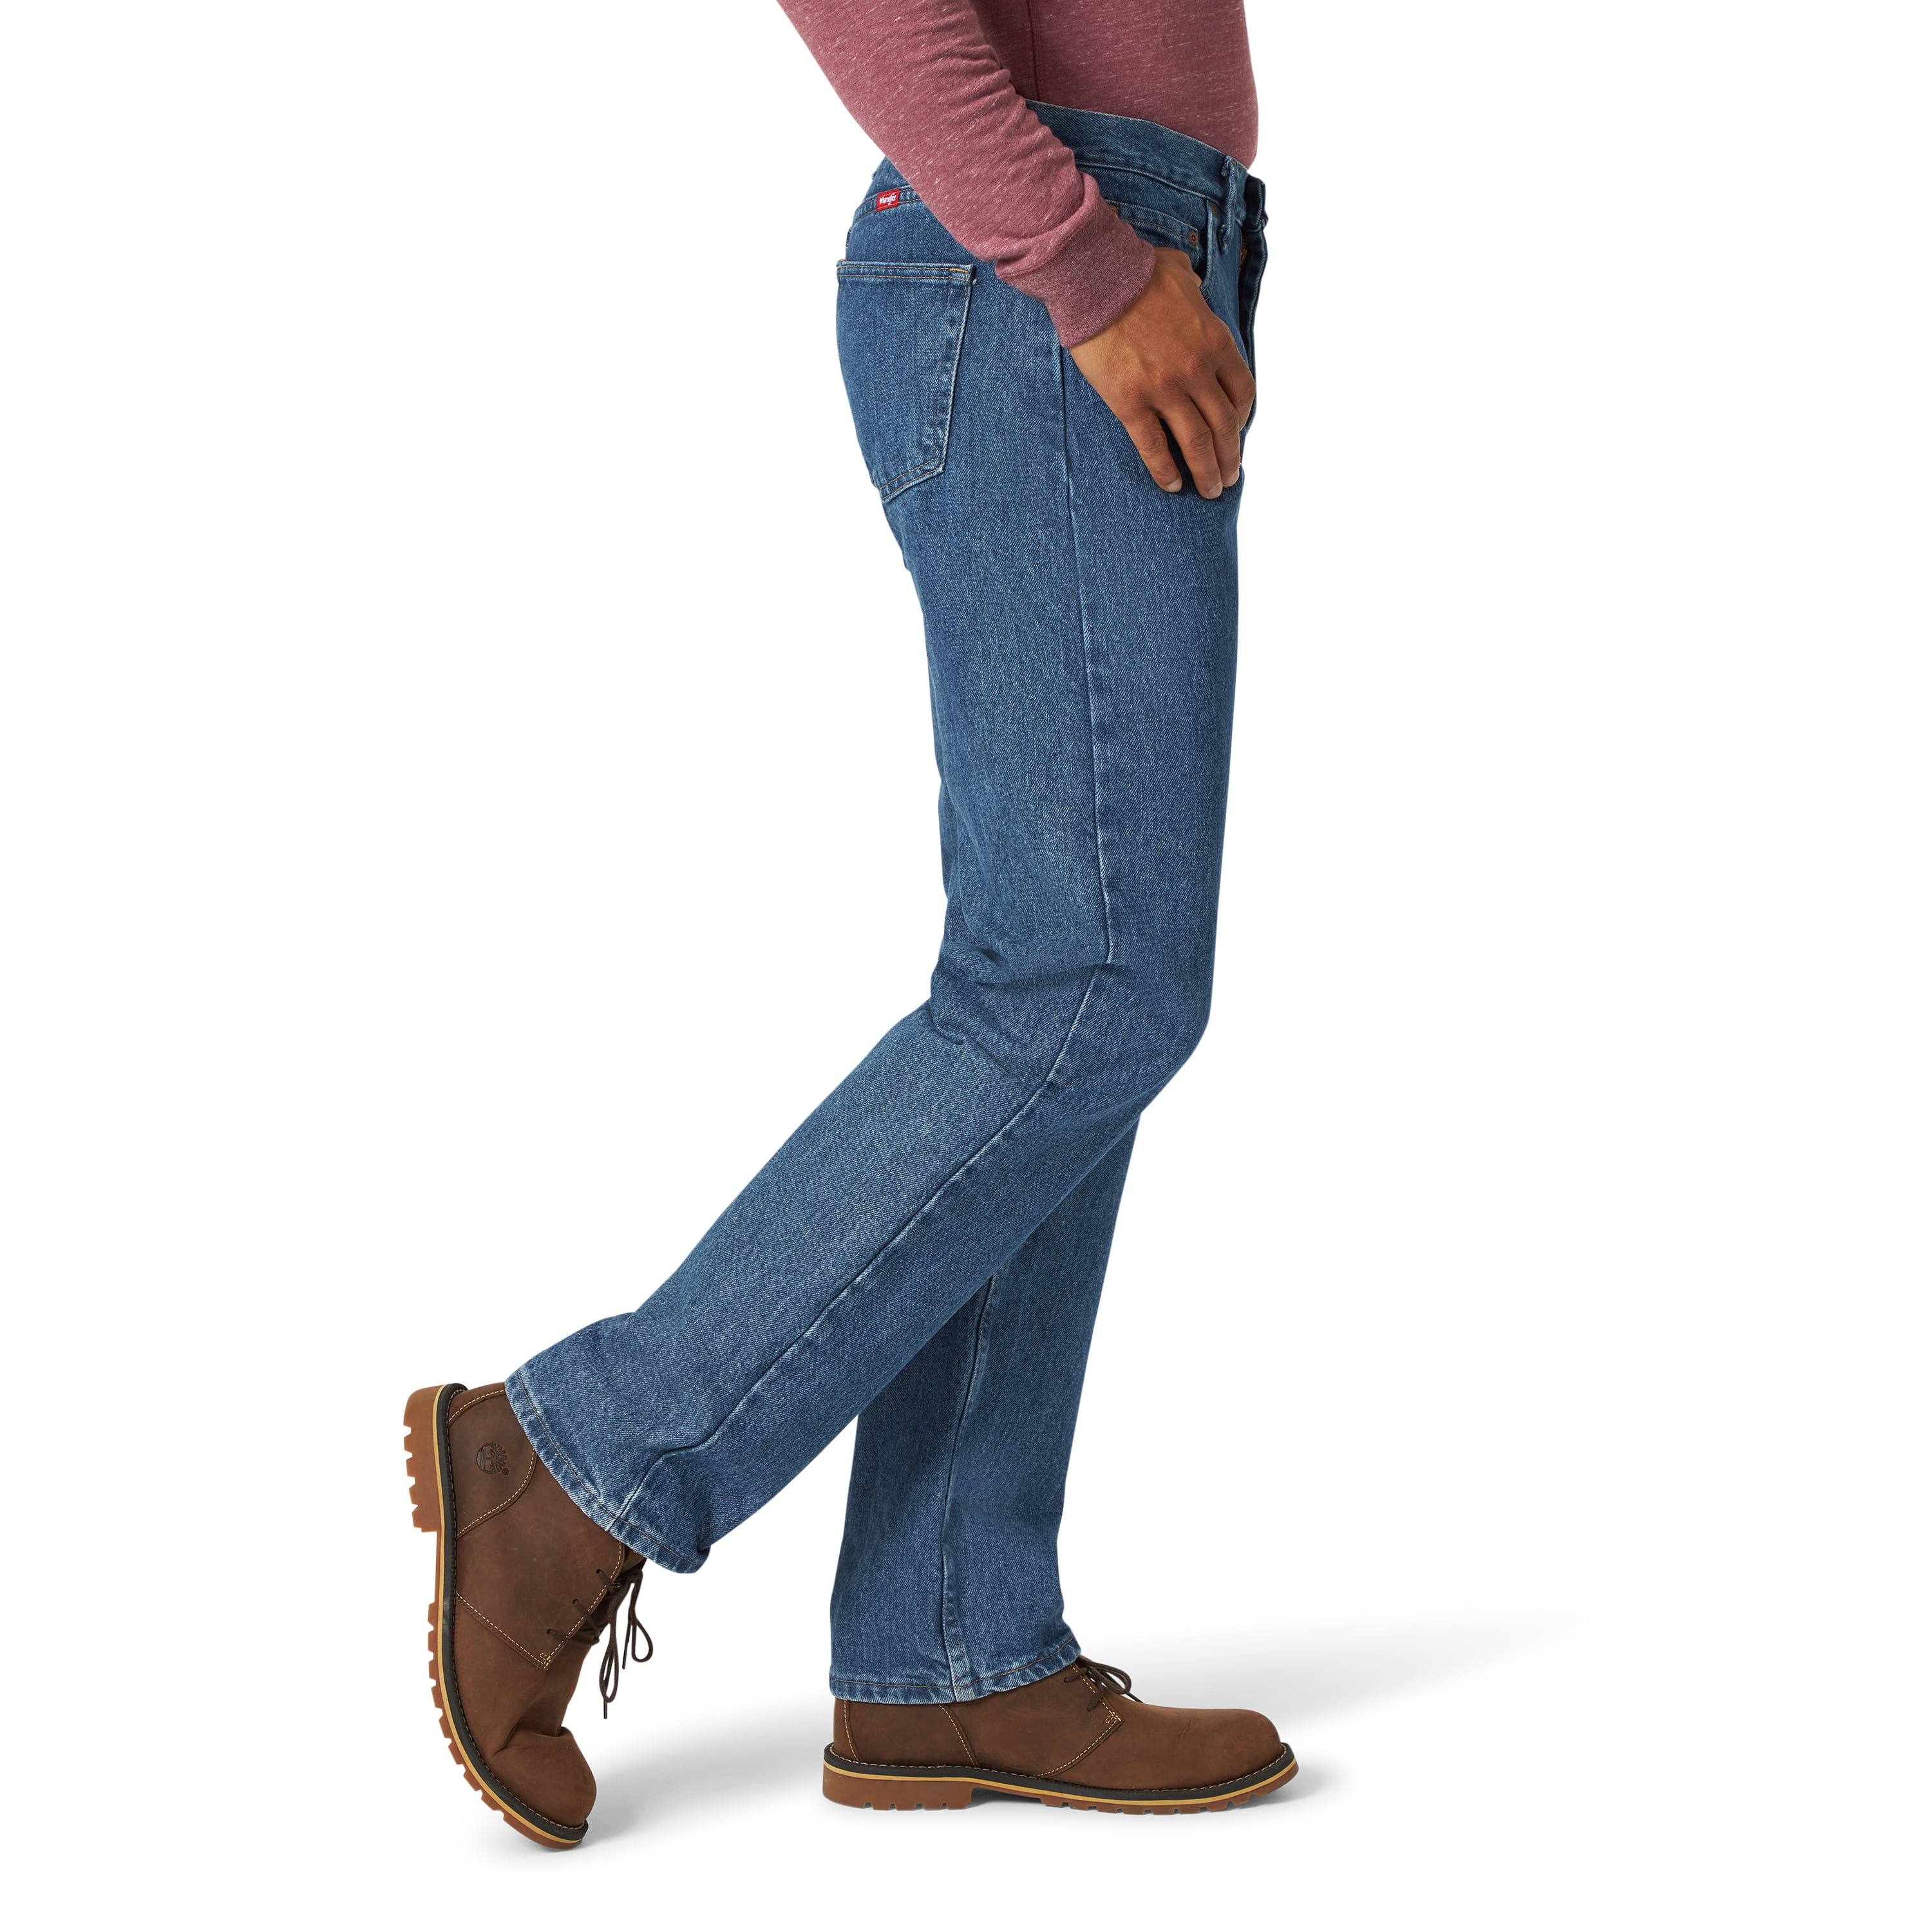 96501ds wrangler jeans